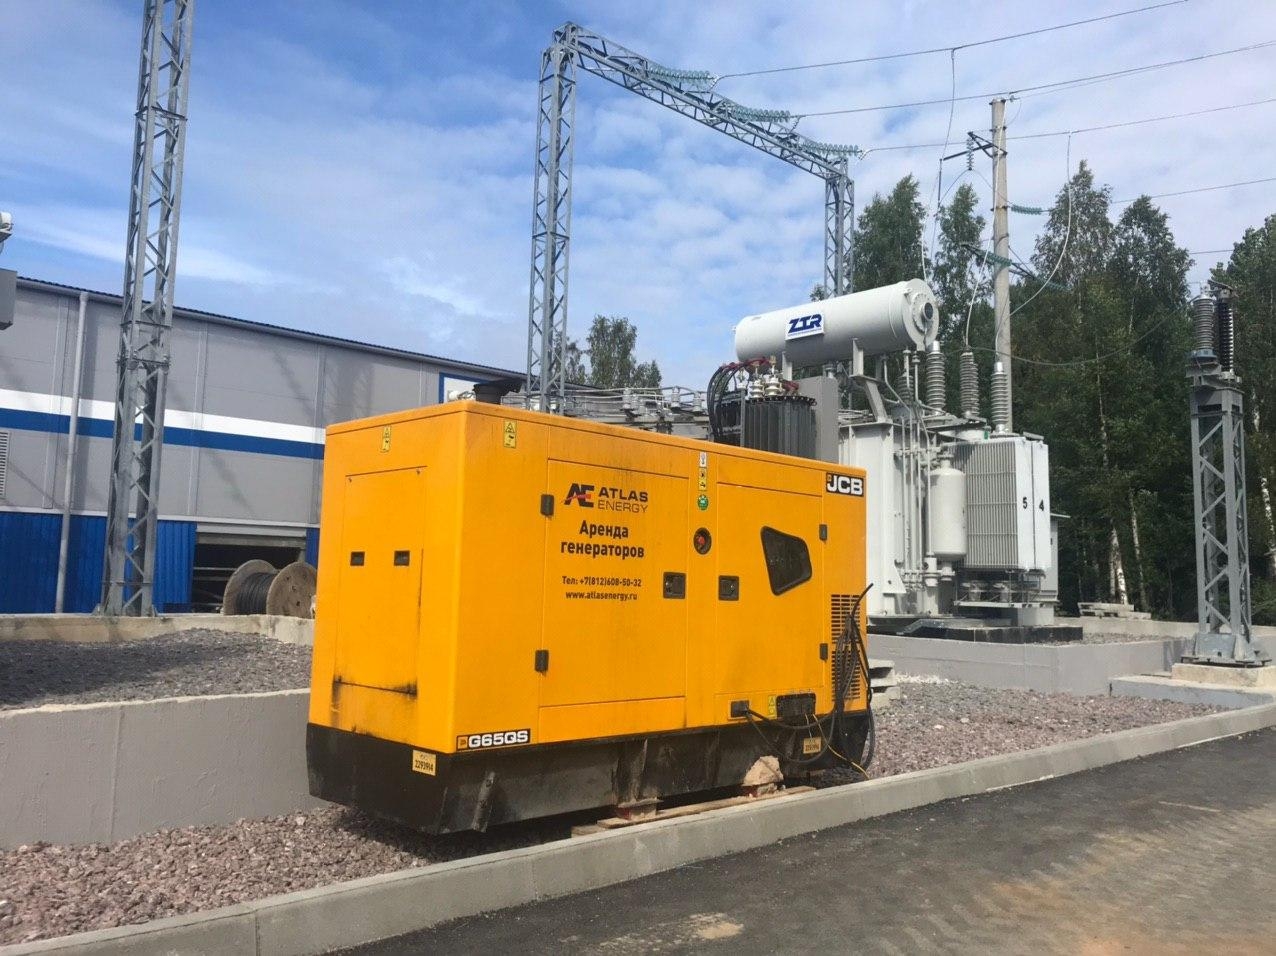 Запуск новой подстанции в г. Усть-Луга, наша компания предоставила для проведения пуско-наладочных работ дизельный генератор JCB G65QS